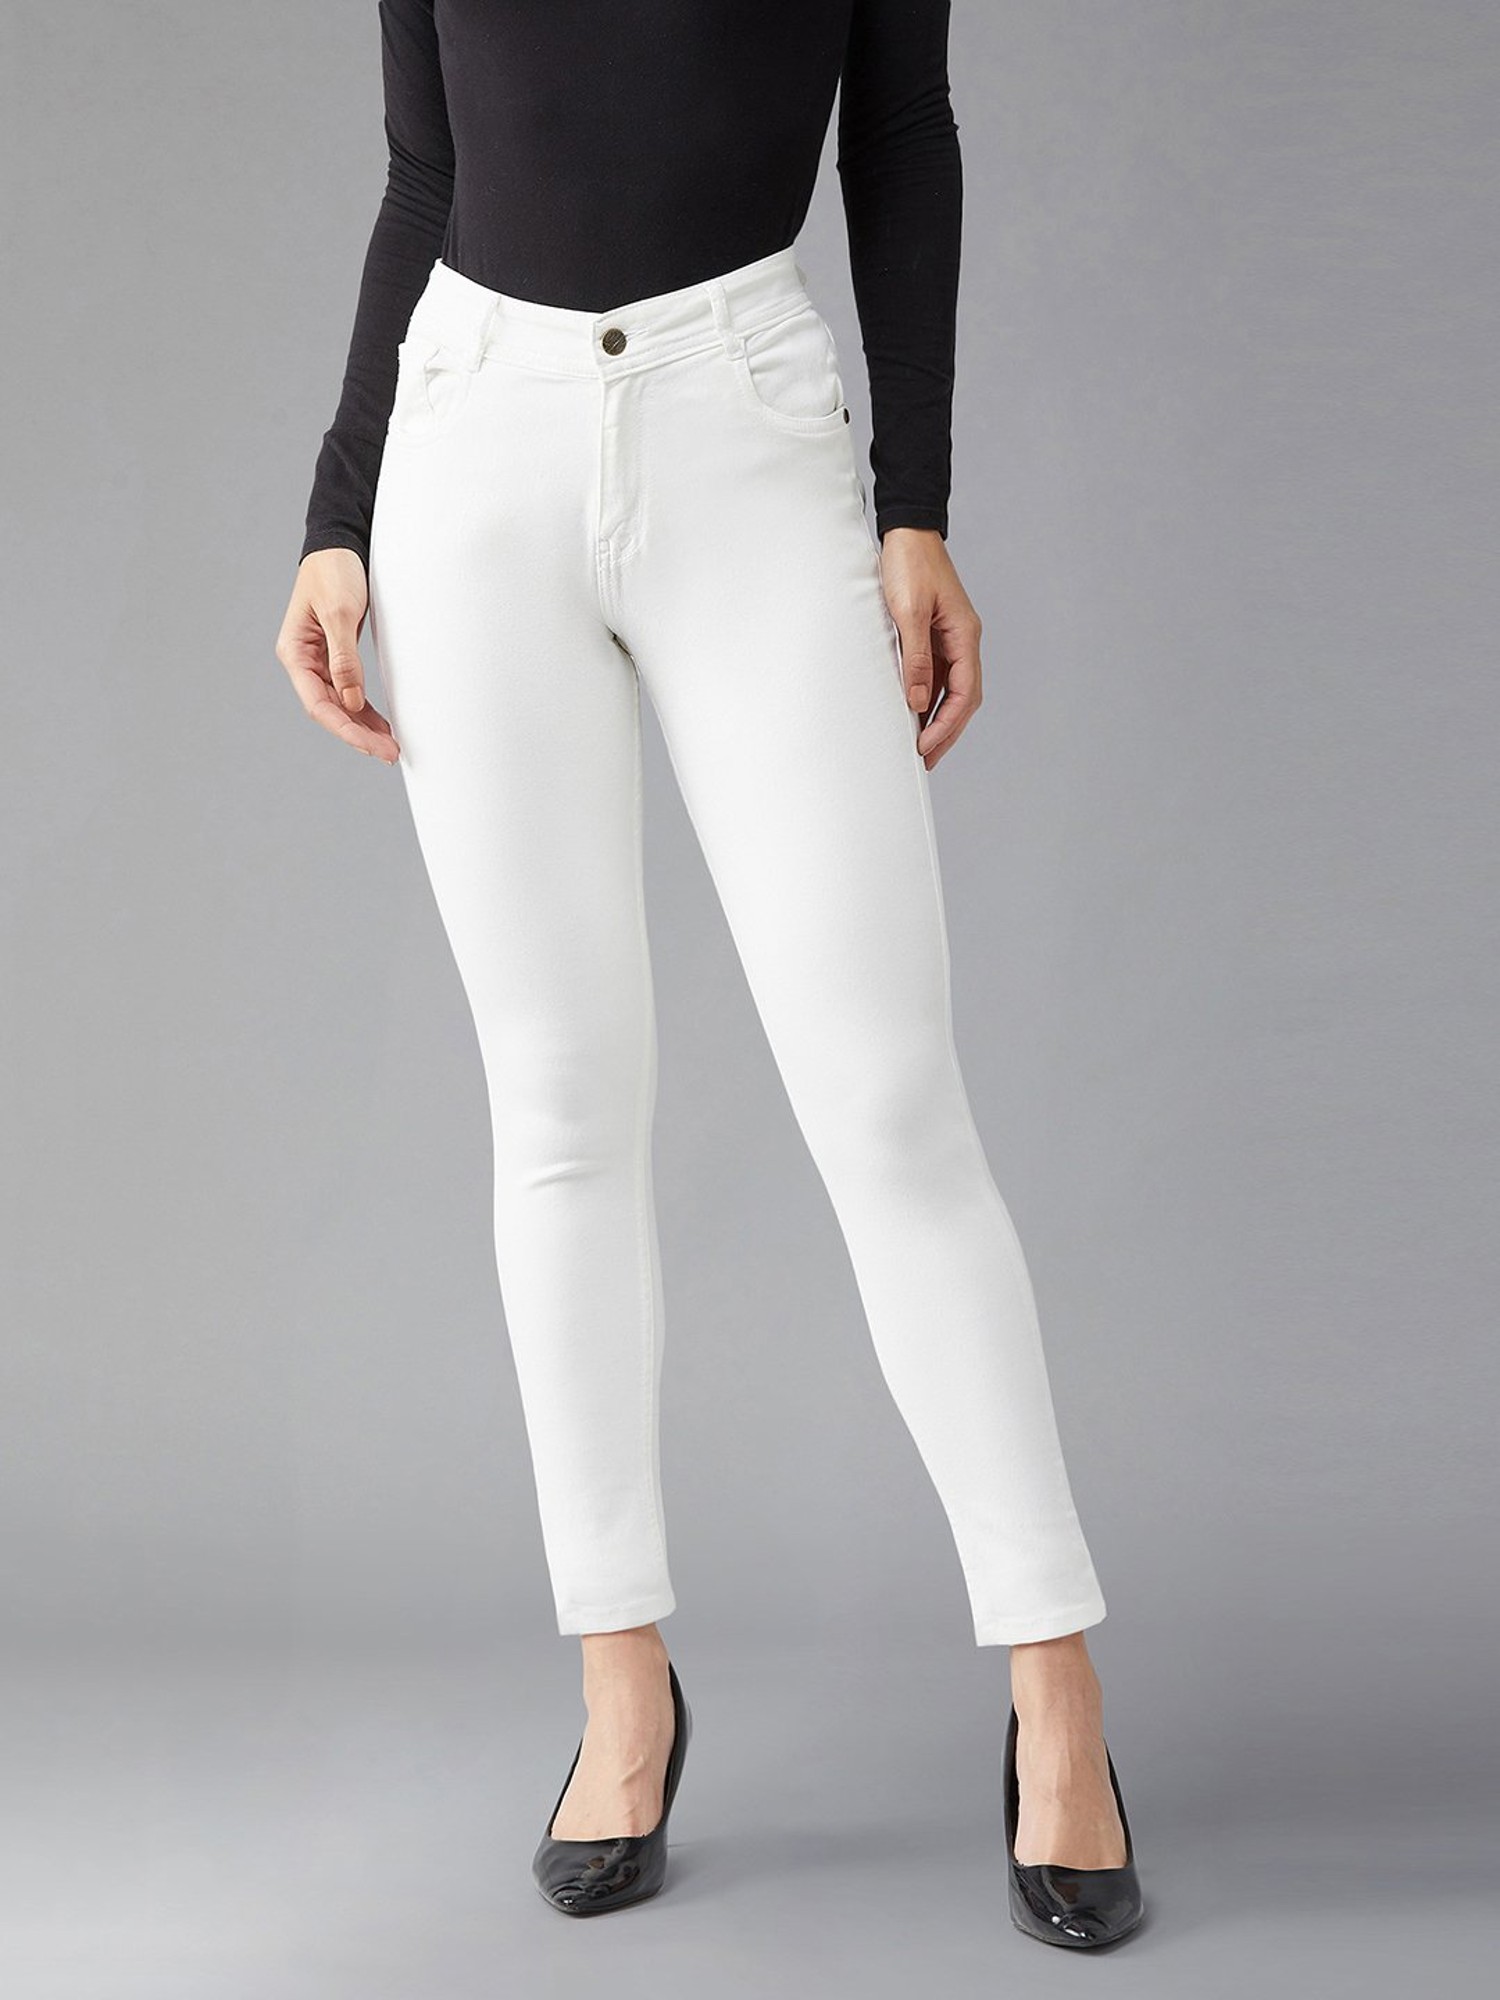 Miss Chase Skinny Women White Jeans - Buy Miss Chase Skinny Women White  Jeans Online at Best Prices in India | Flipkart.com